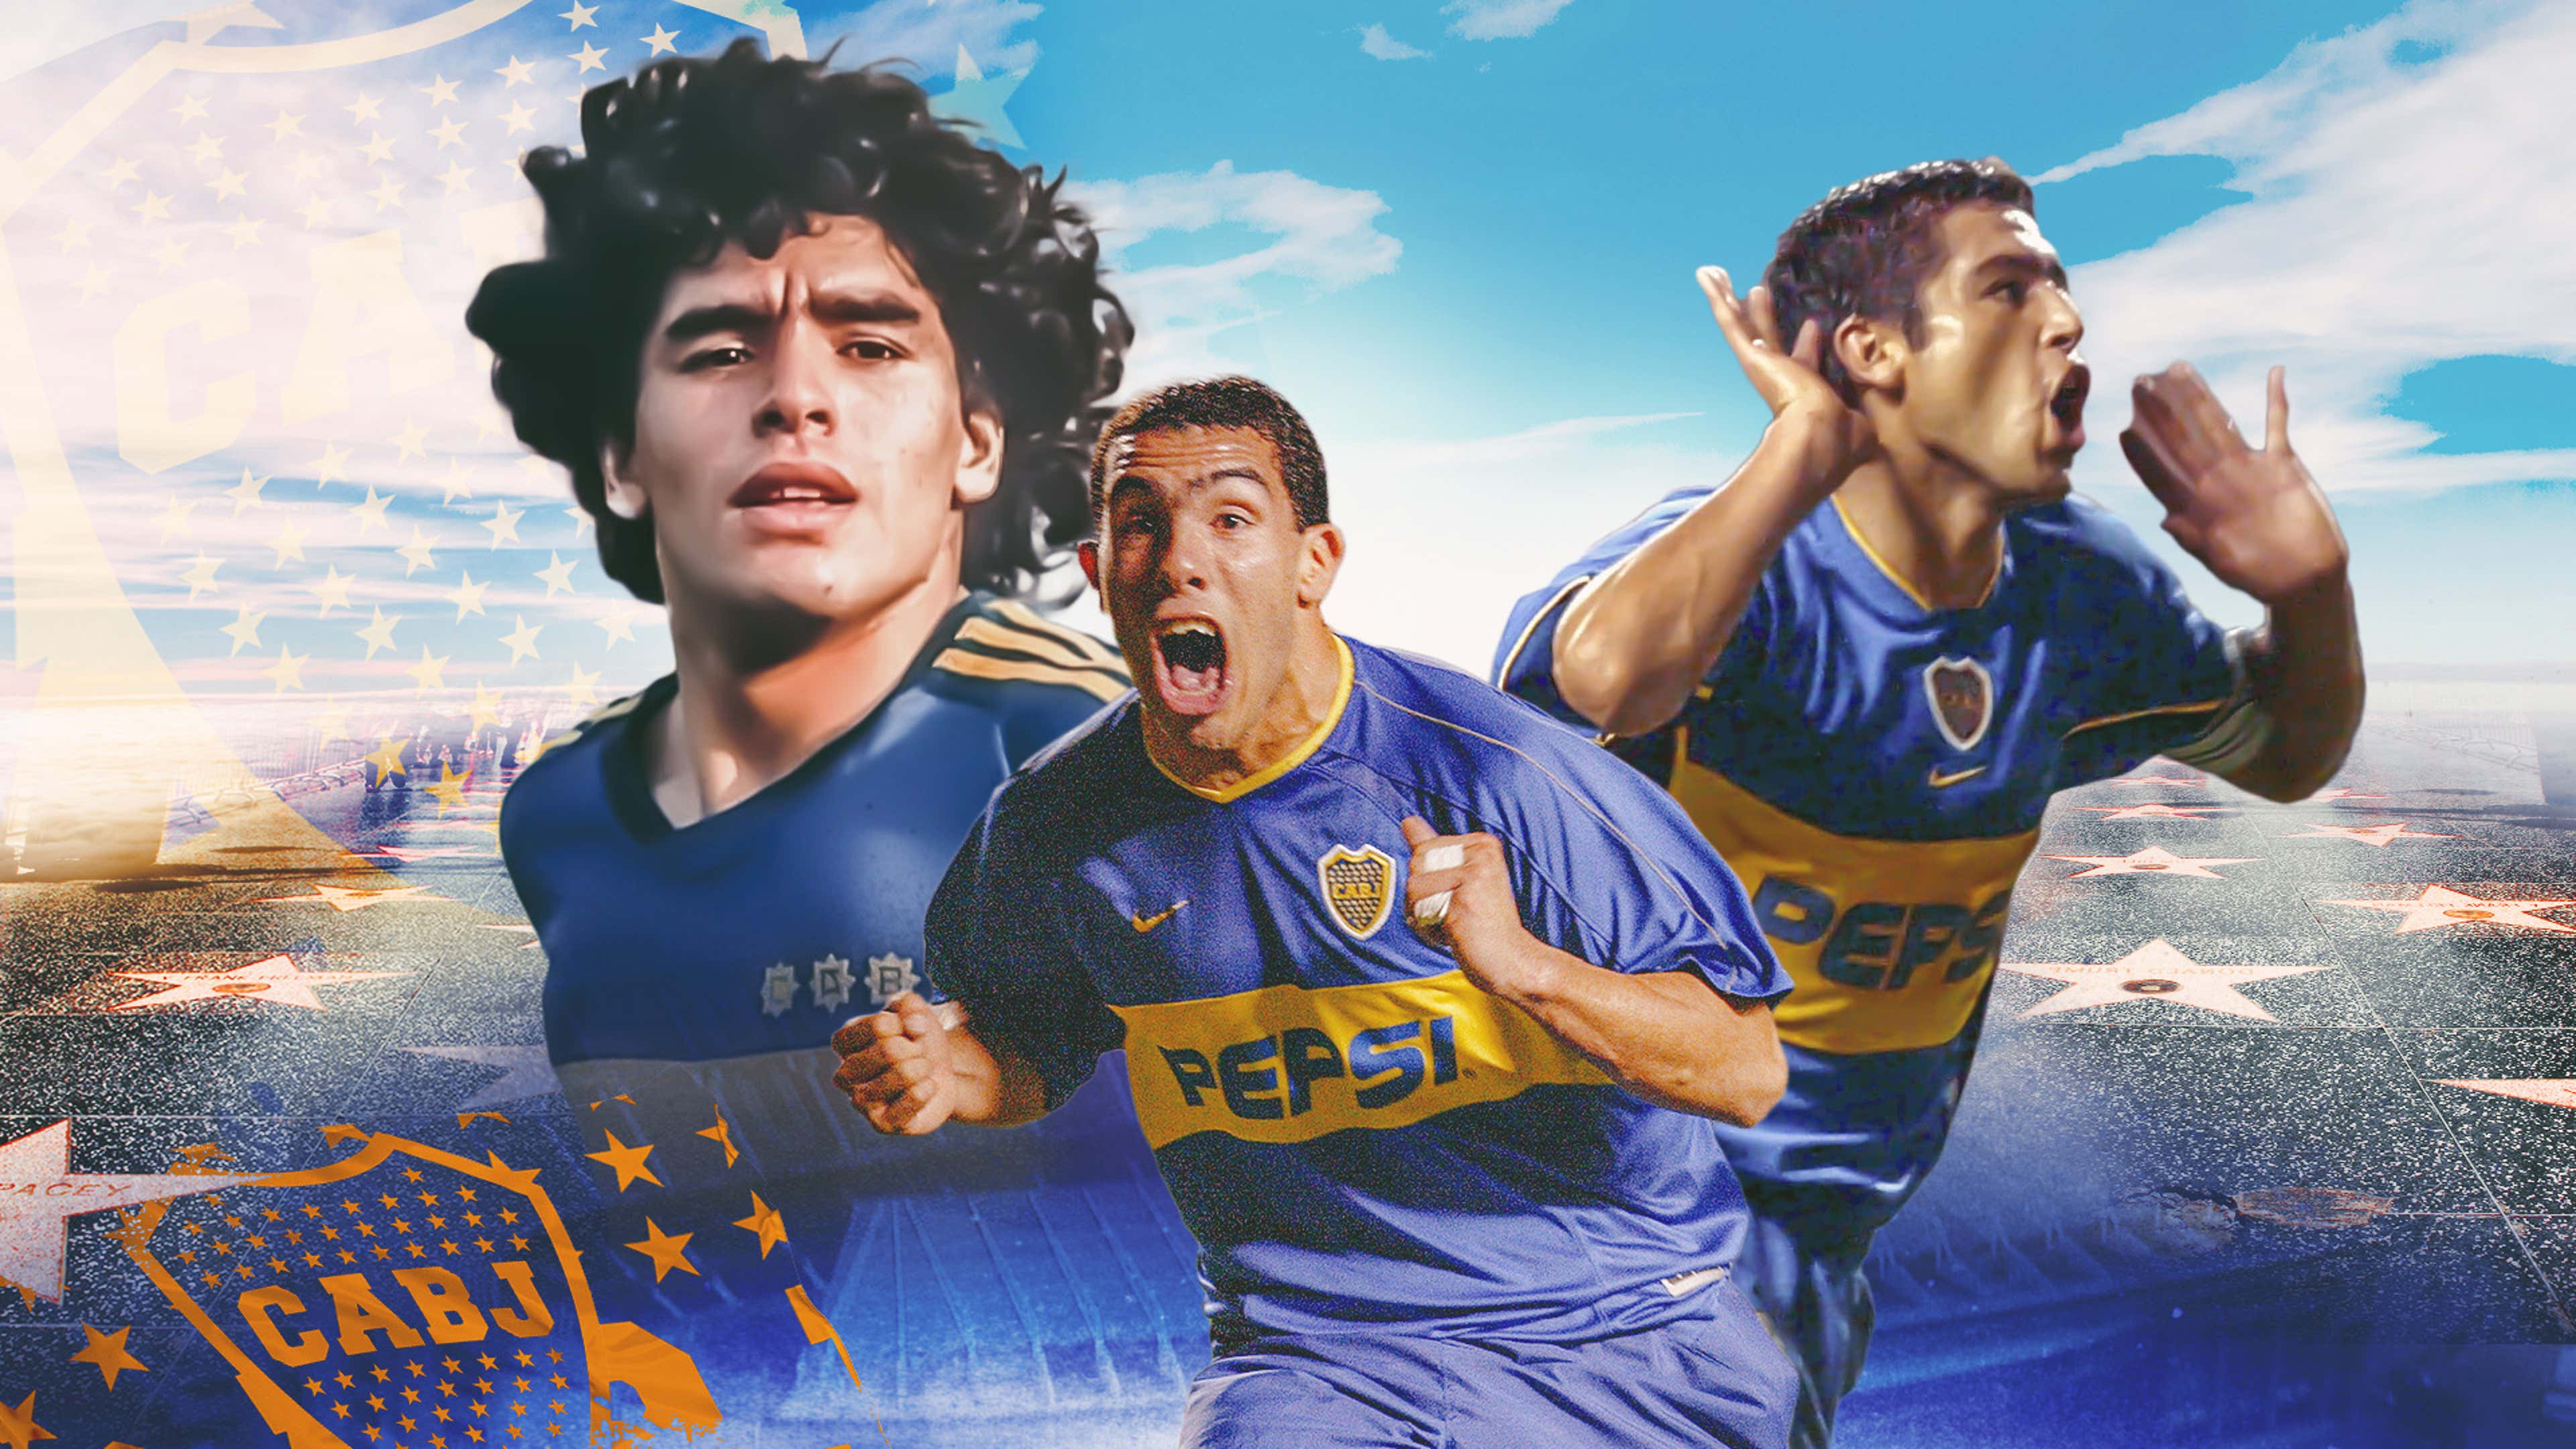 Ultimate Boca Juniors dream team - Maradona & Riquelme side by side